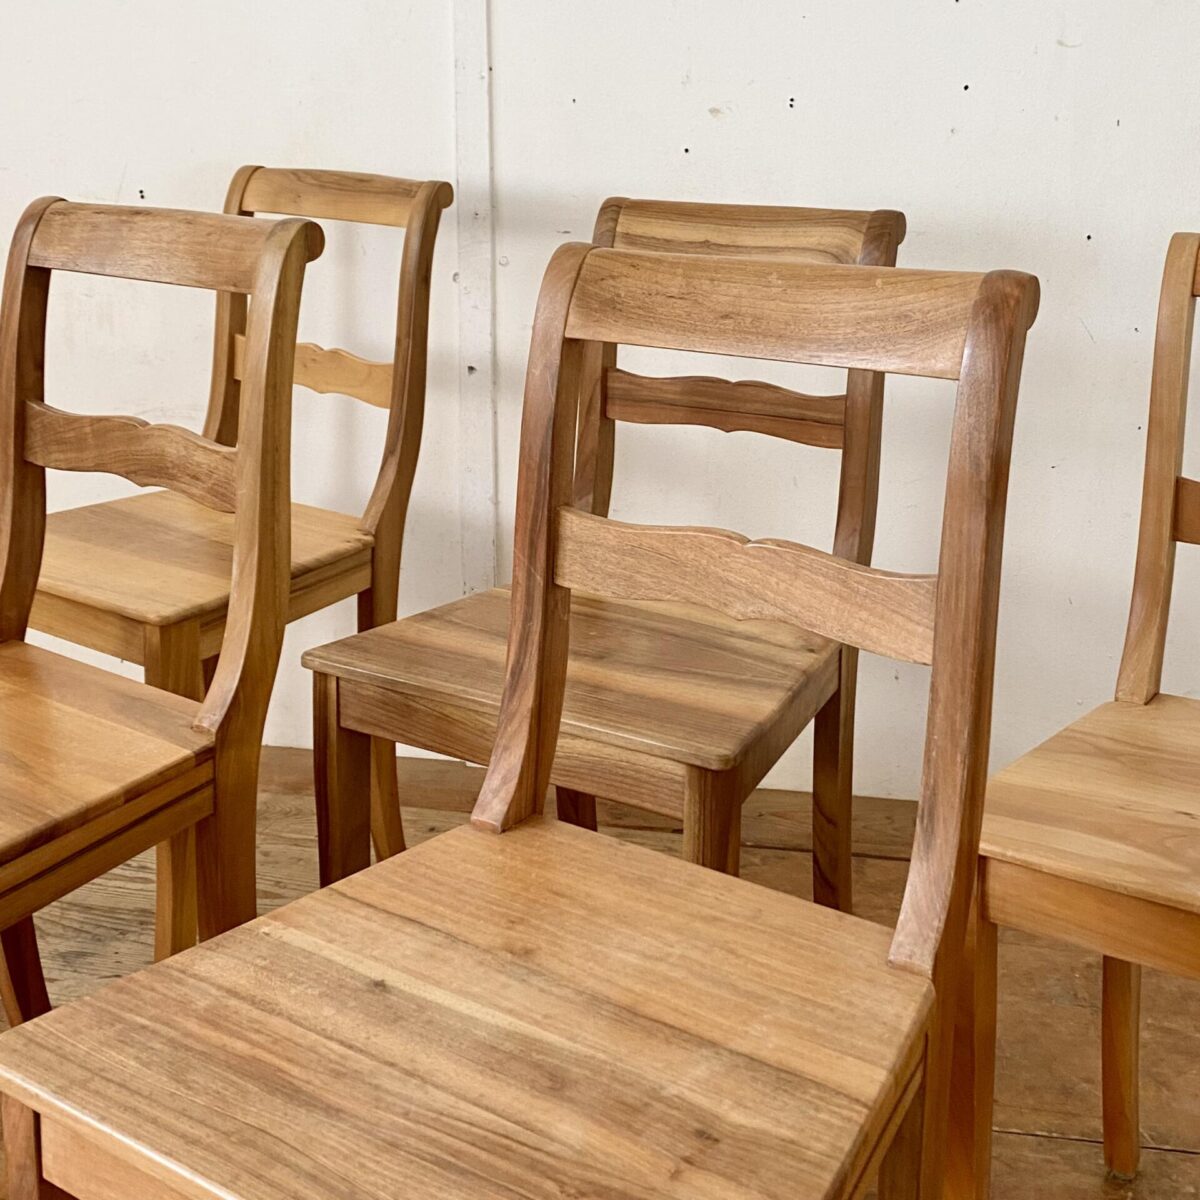 Deuxieme.shop Nussbaum Biedermeier Stühle. Preis fürs Set. Die Stühle sind in stabilem guten Zustand, mit ein paar Wasserflecken auf den Sitzflächen. 